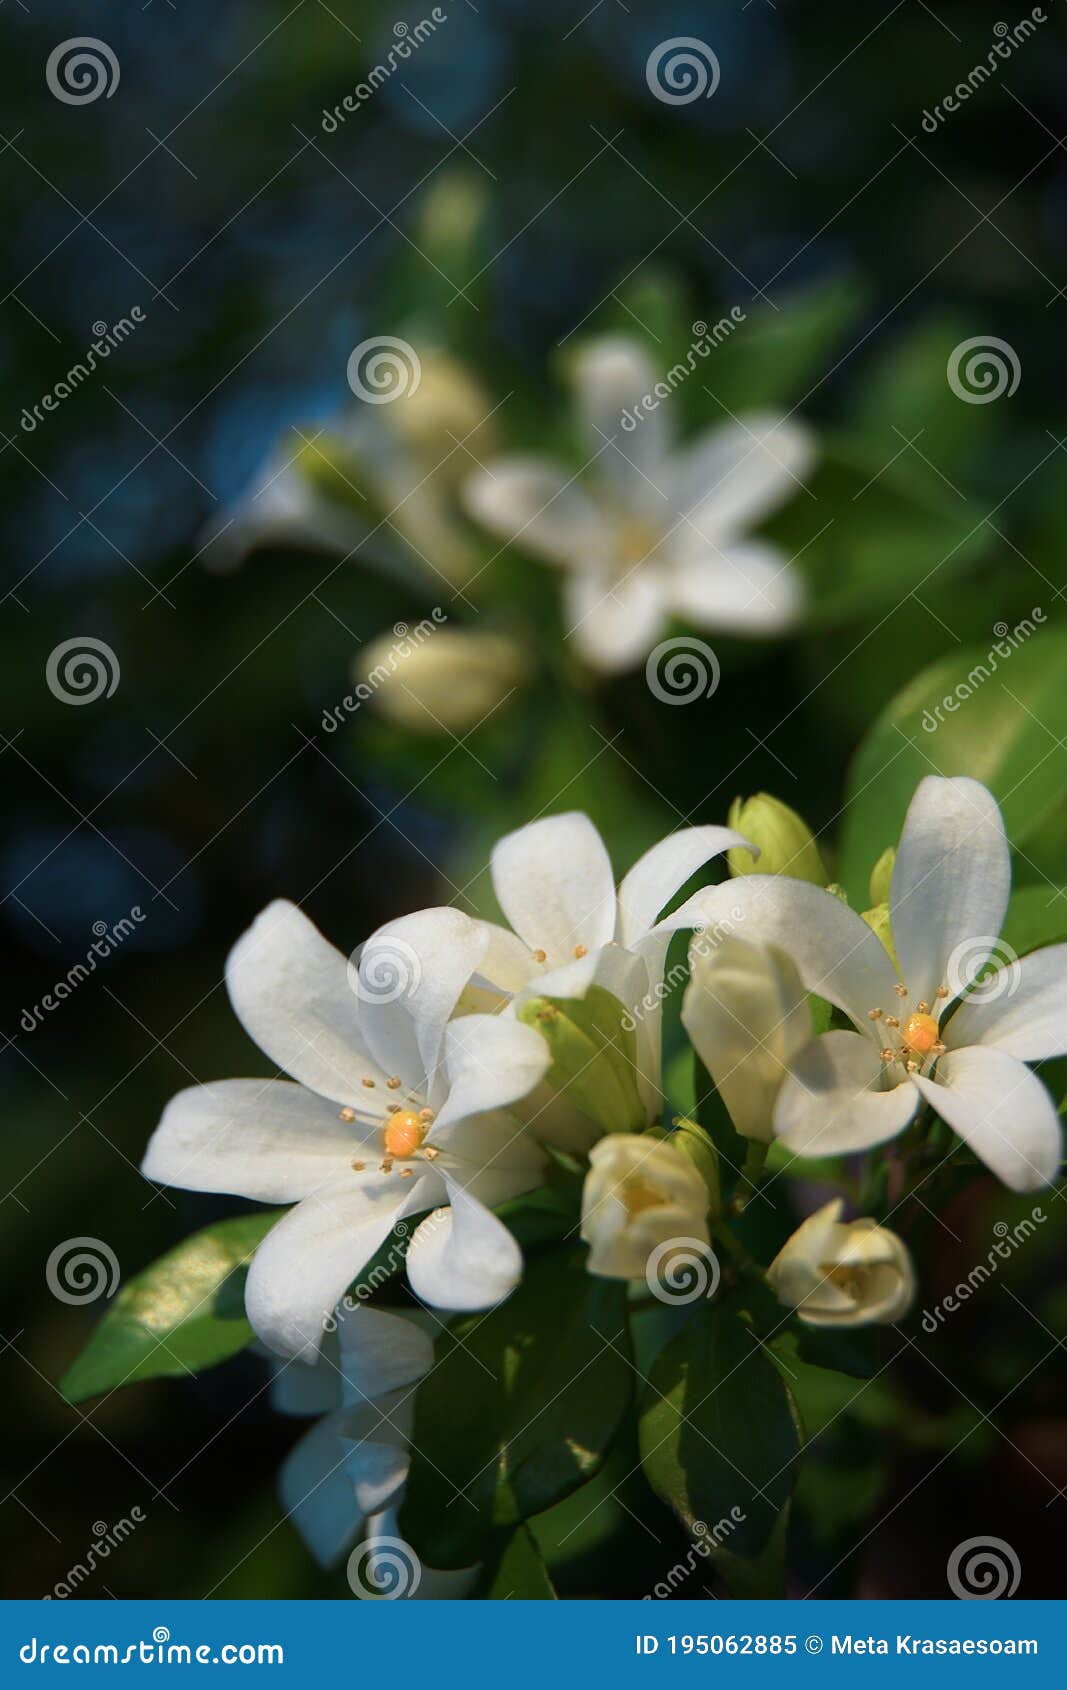 orange jasmine. murraya paniculata, chalcas exotica, murraya exotica, white flowers.